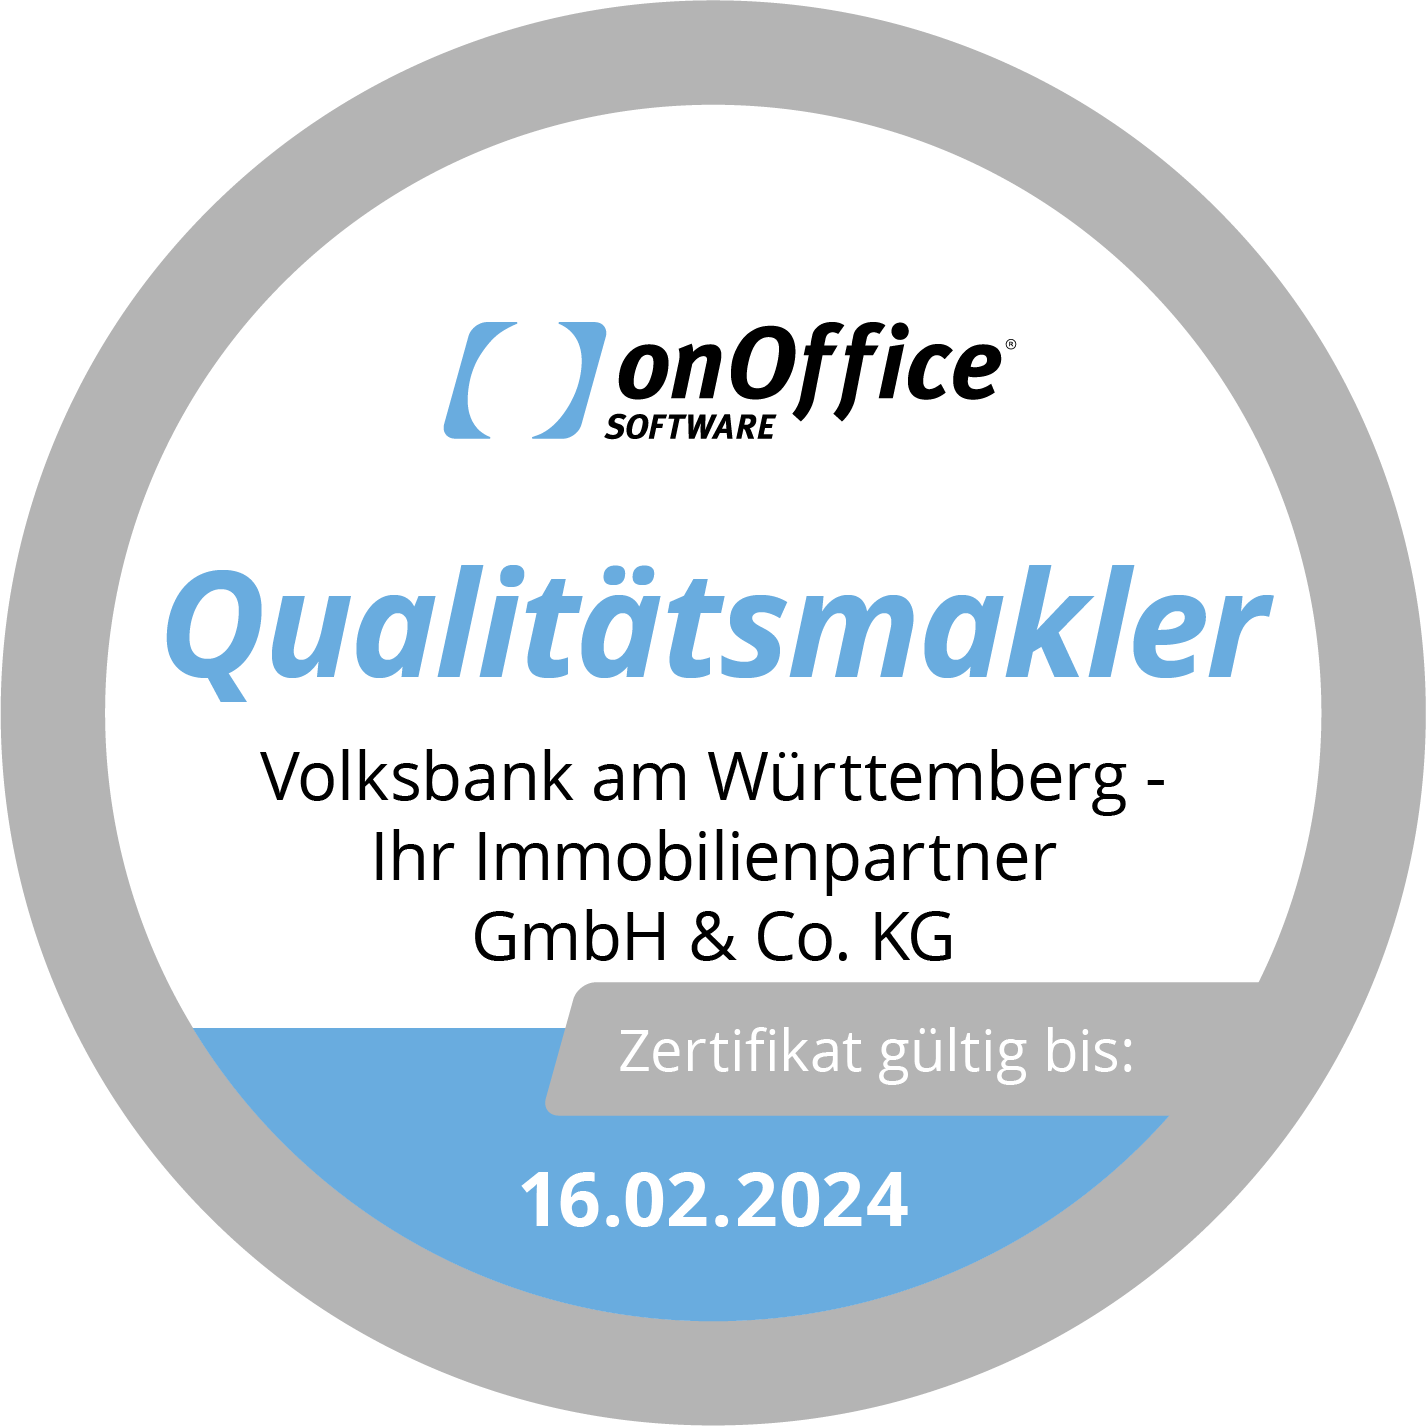 onOffice Qualitätsmakler Silber